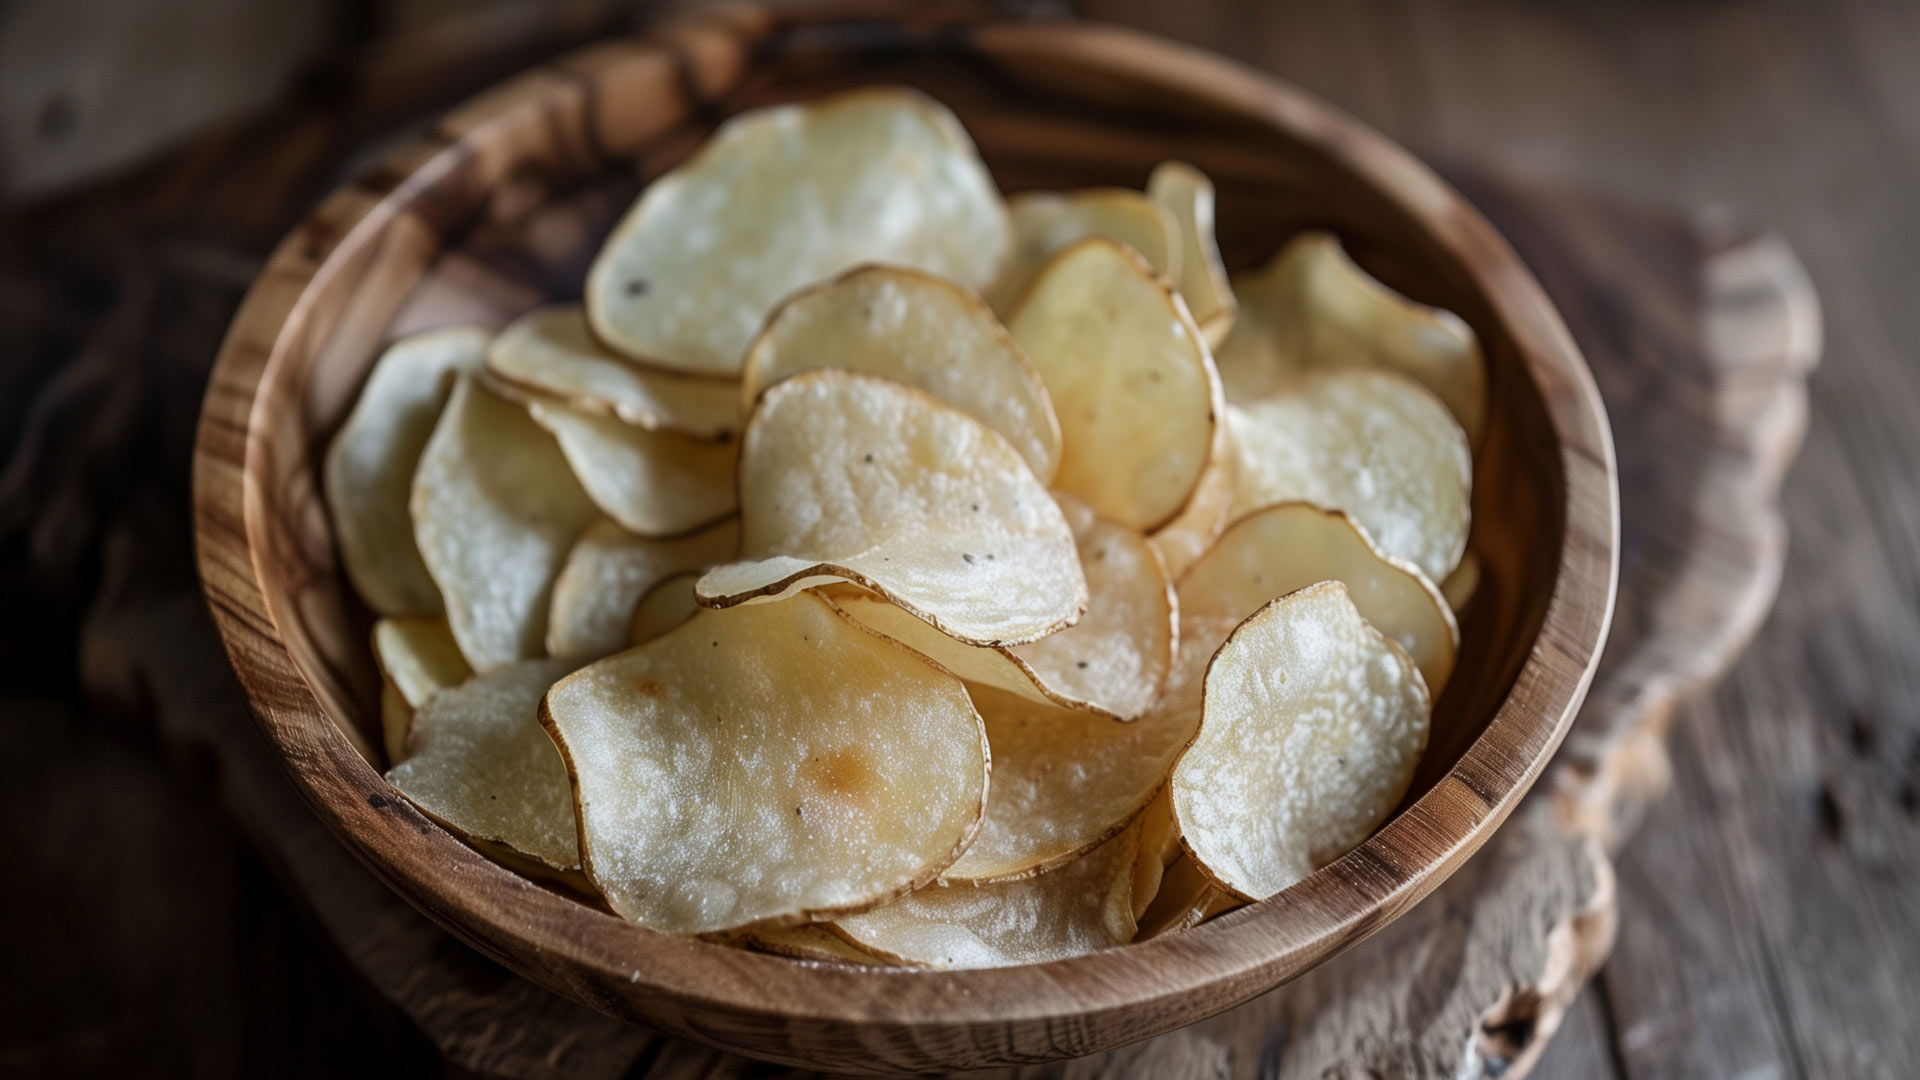 Trüffel Chips